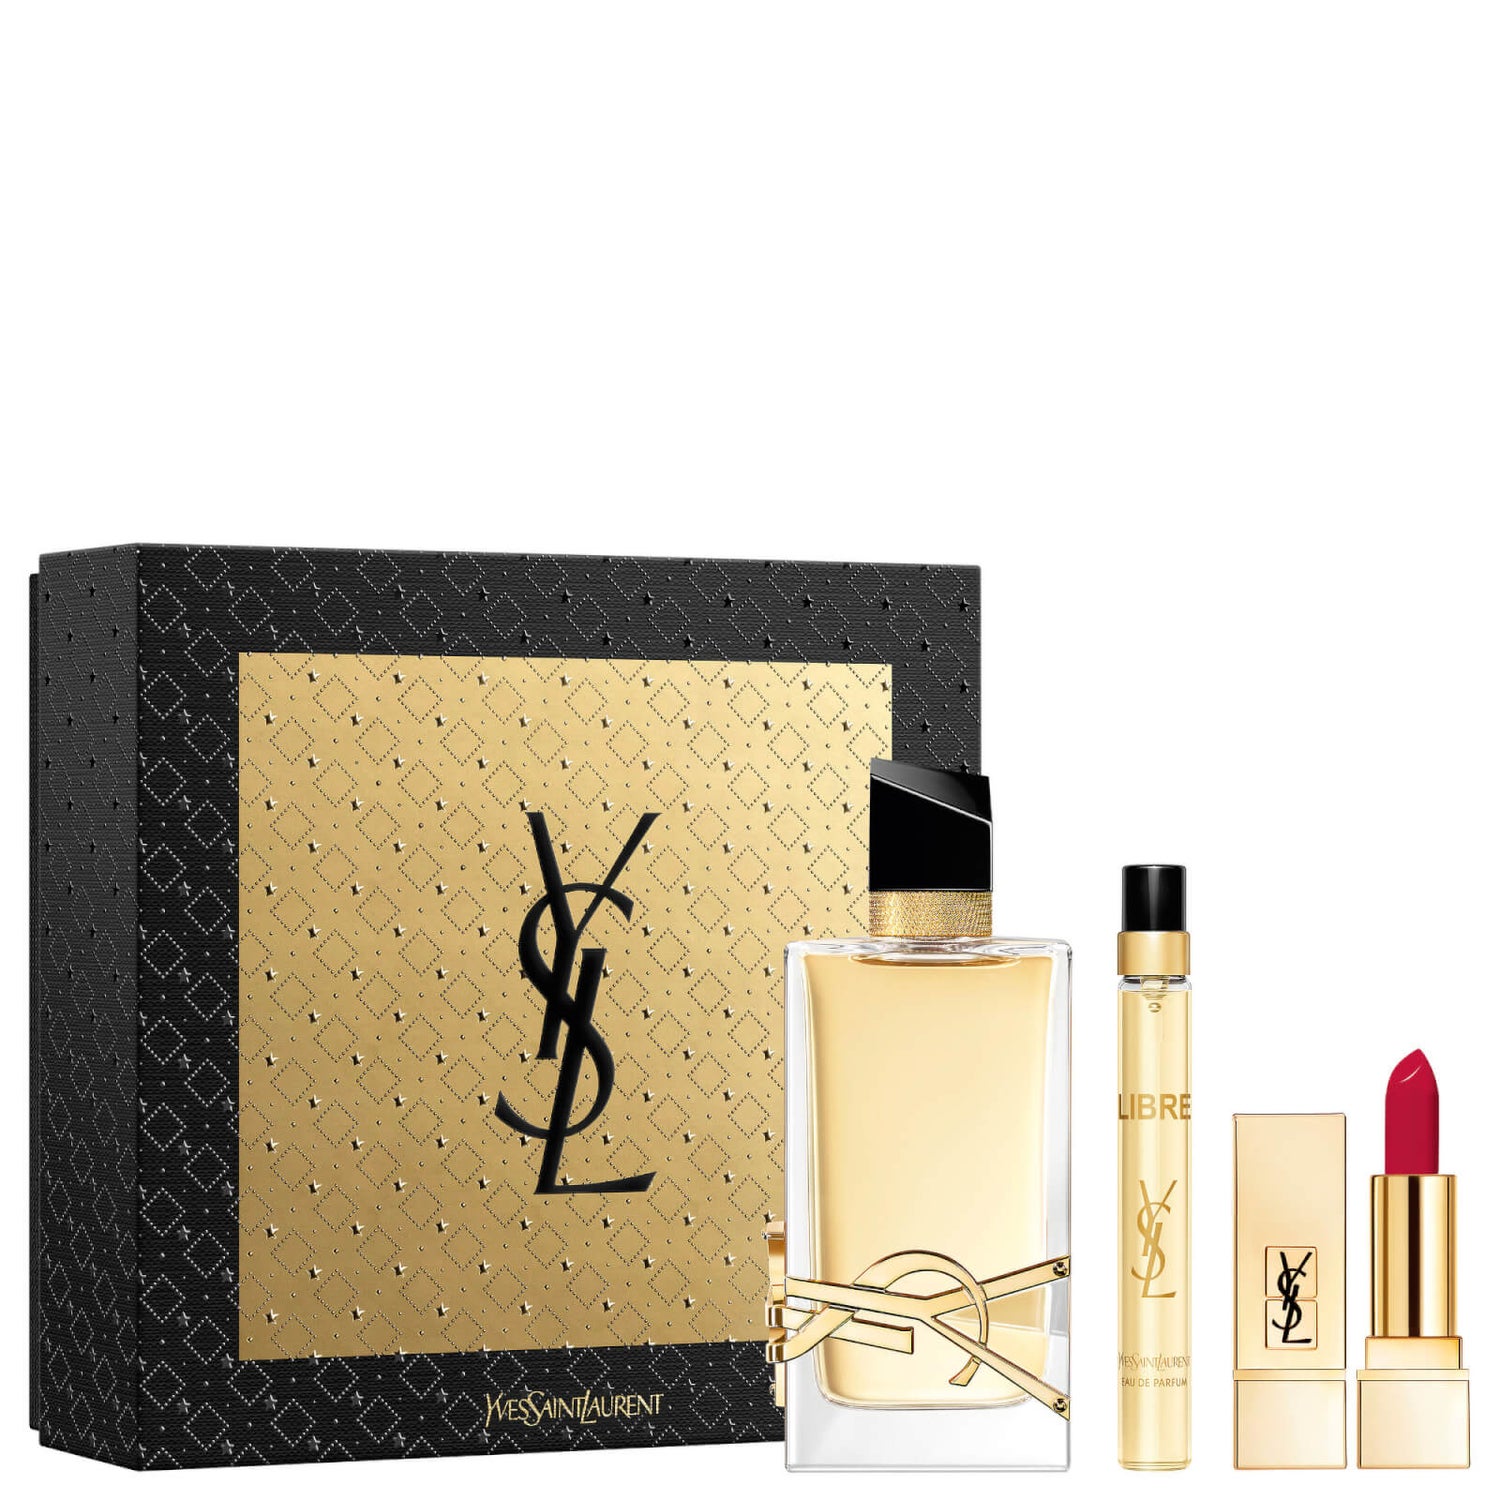 Yves Saint Laurent Deluxe Libre Eau de Parfum Gift Set (Worth £138.00)